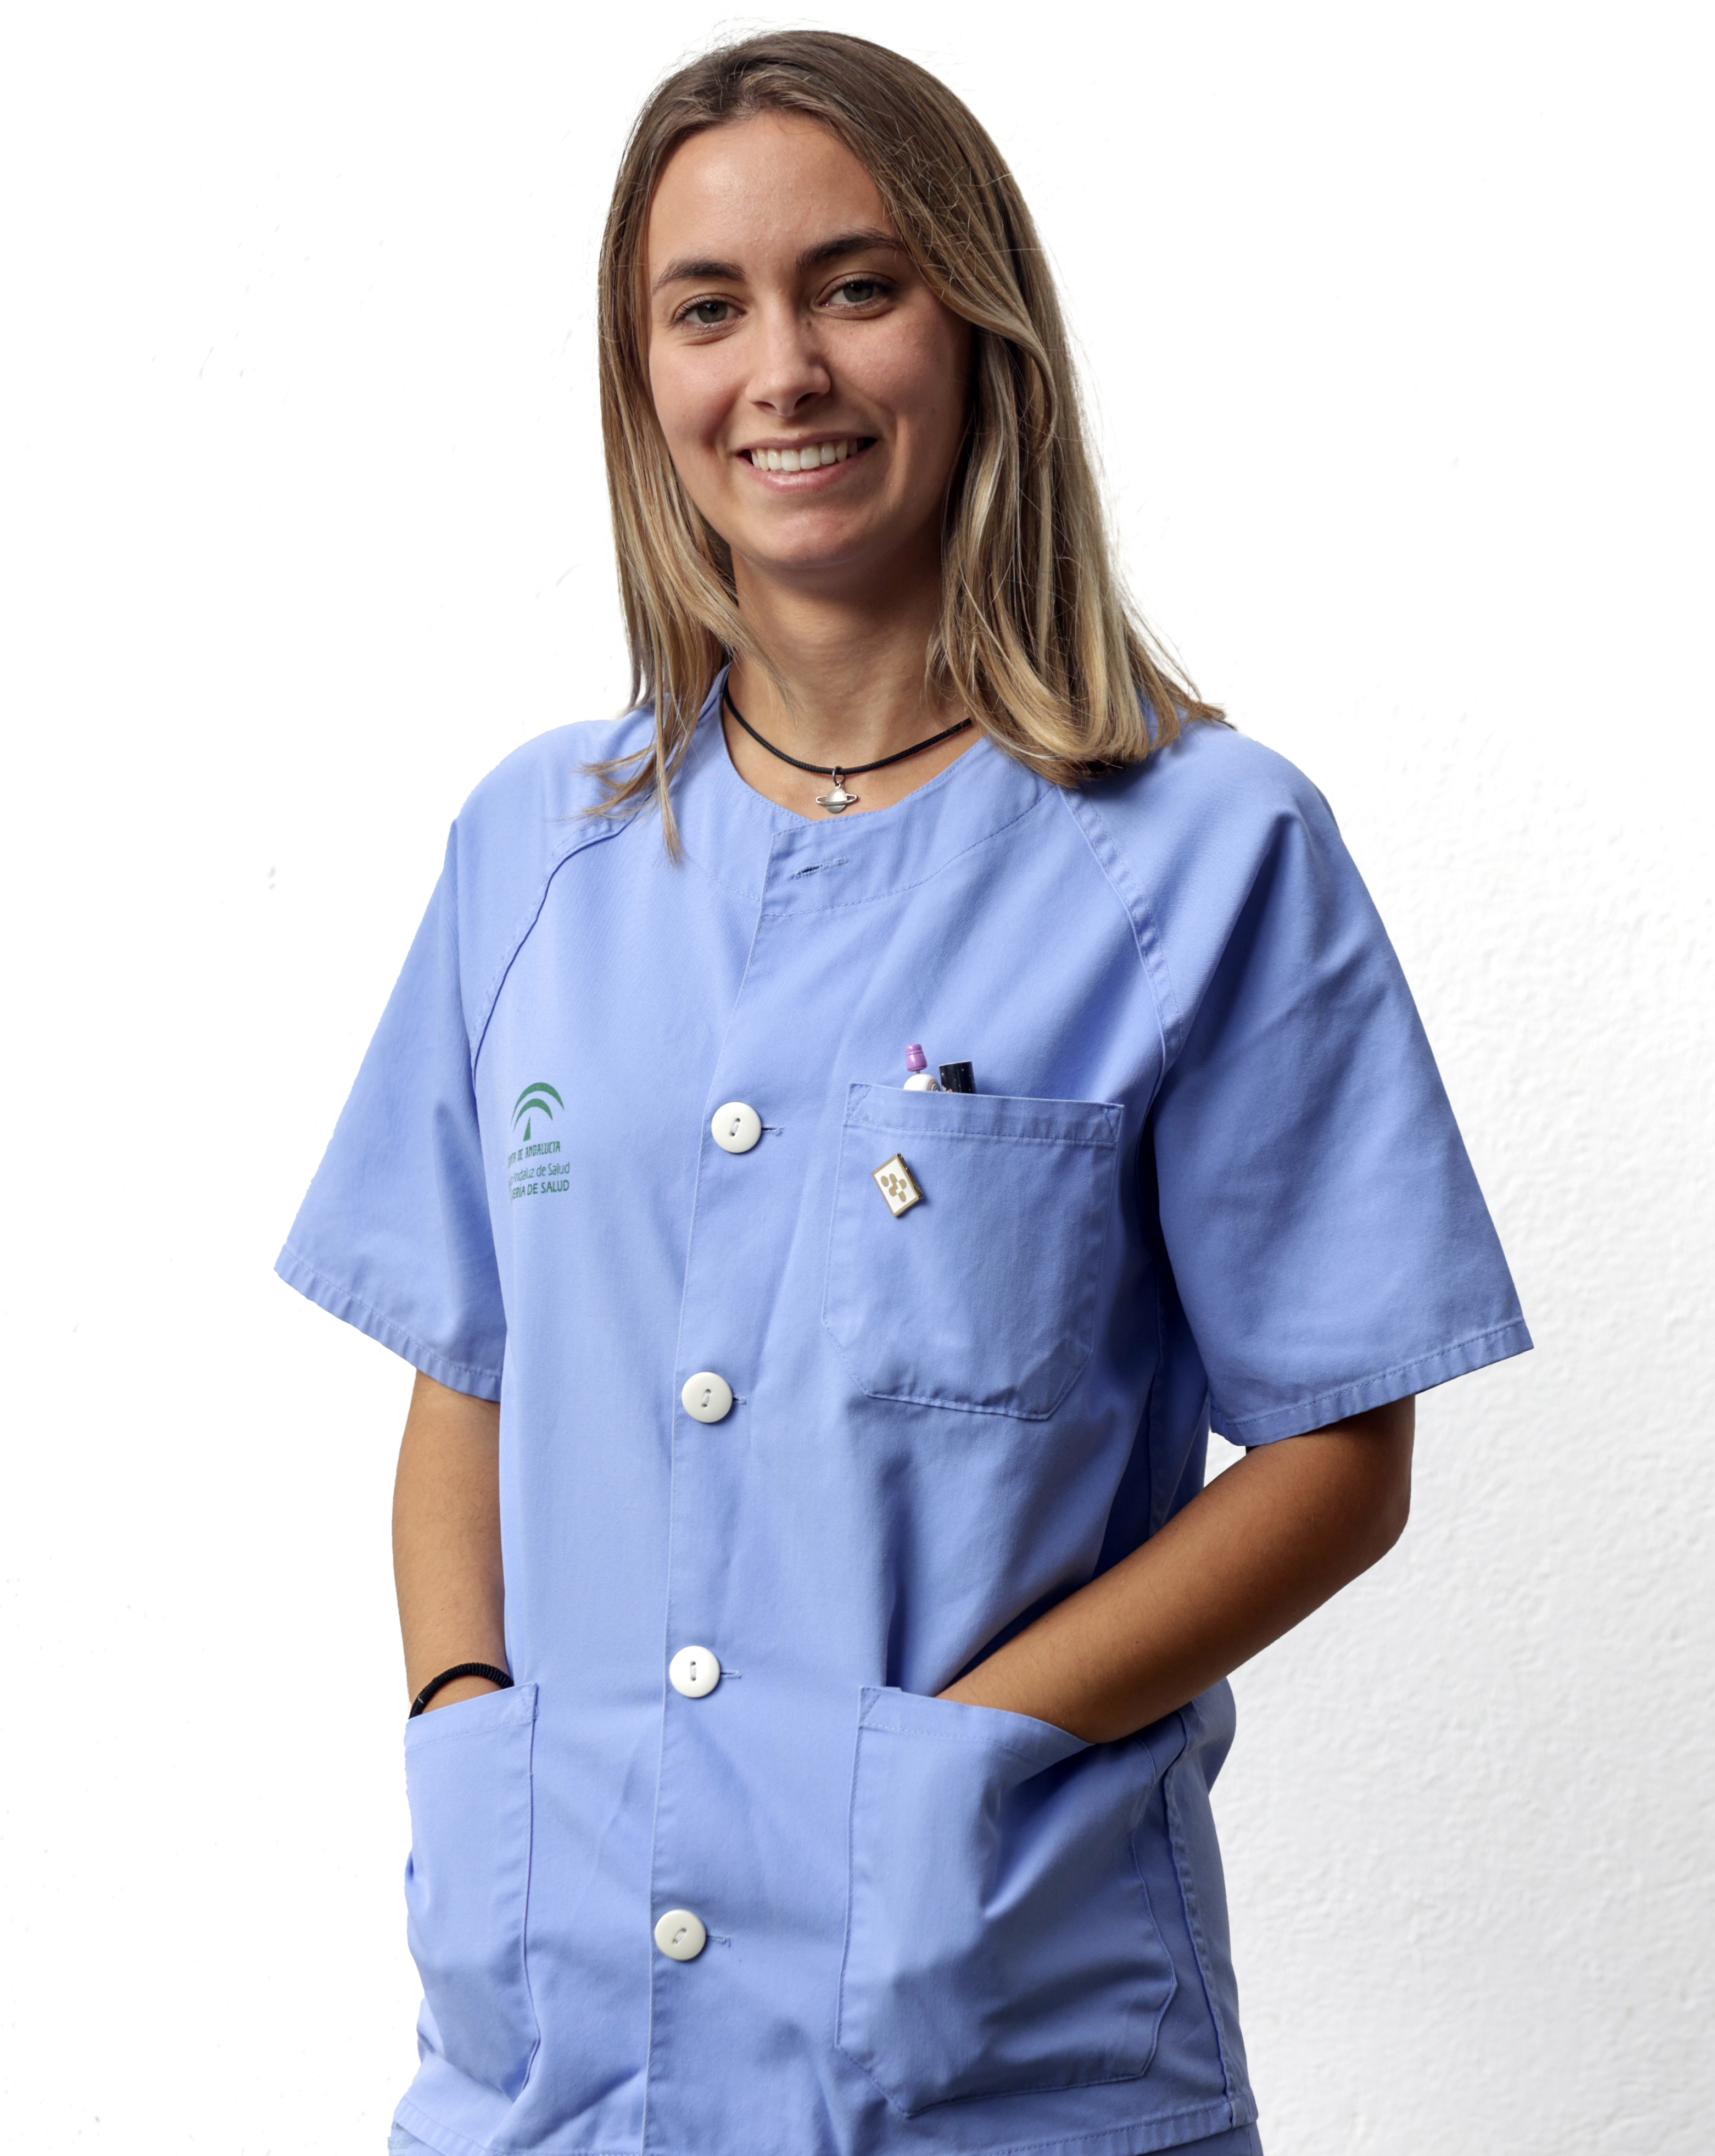 La Mejor Enfermera Interna Residente de la provincia se ha formado en el Hospital de Valme: Paula Archiles